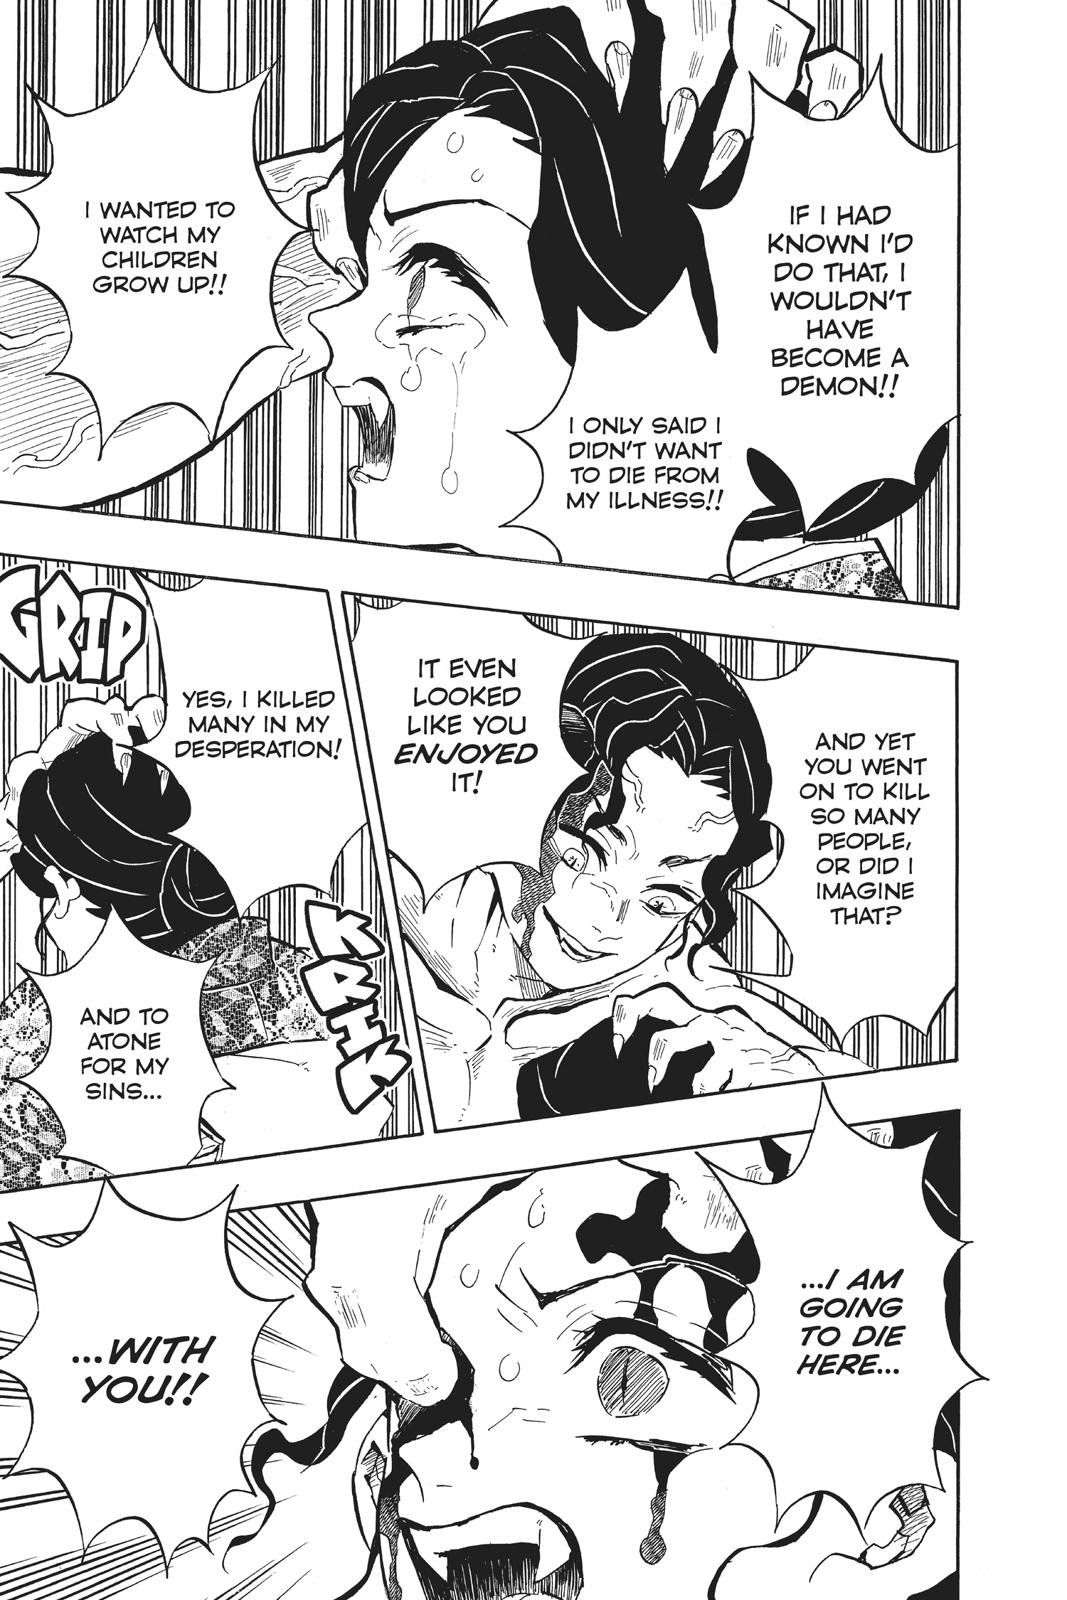 Demon Slayer Manga Manga Chapter - 138 - image 11